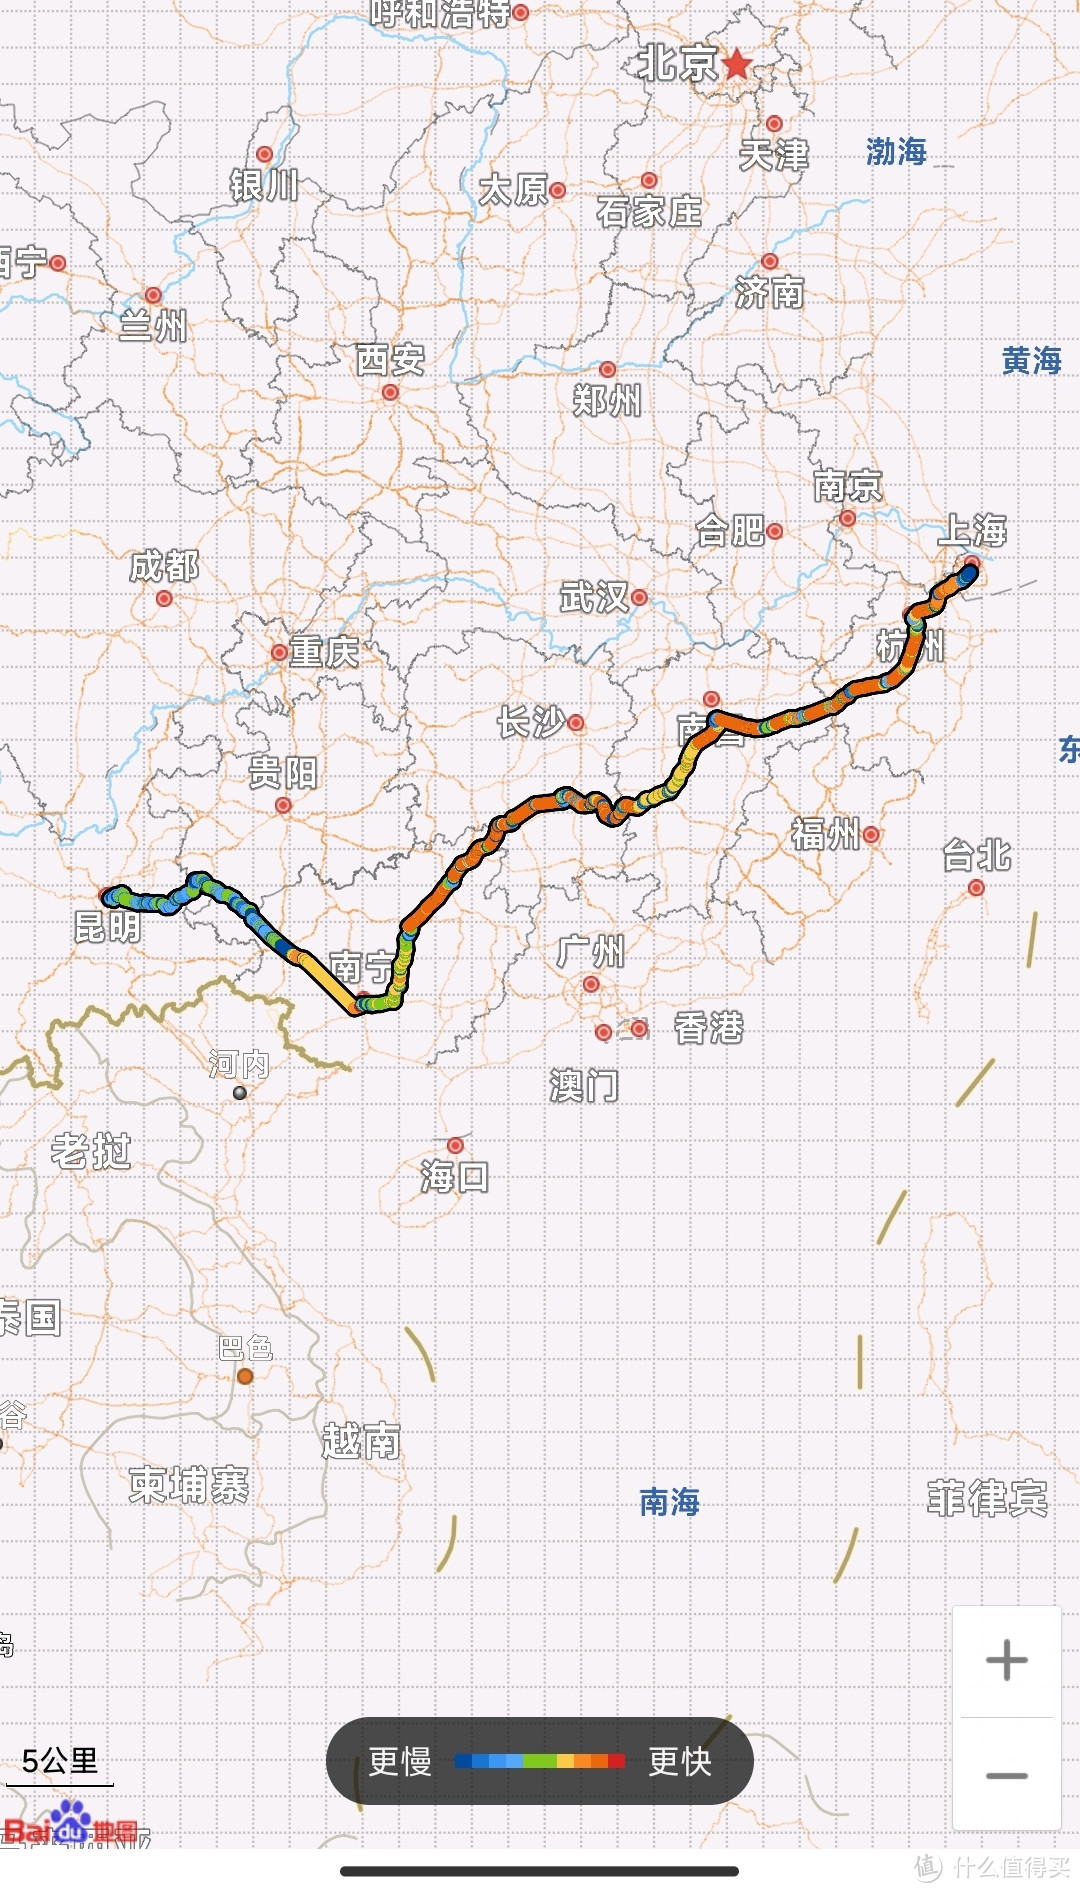 体验43小时的火车之旅--高铁+绿皮T382  丽江----上海